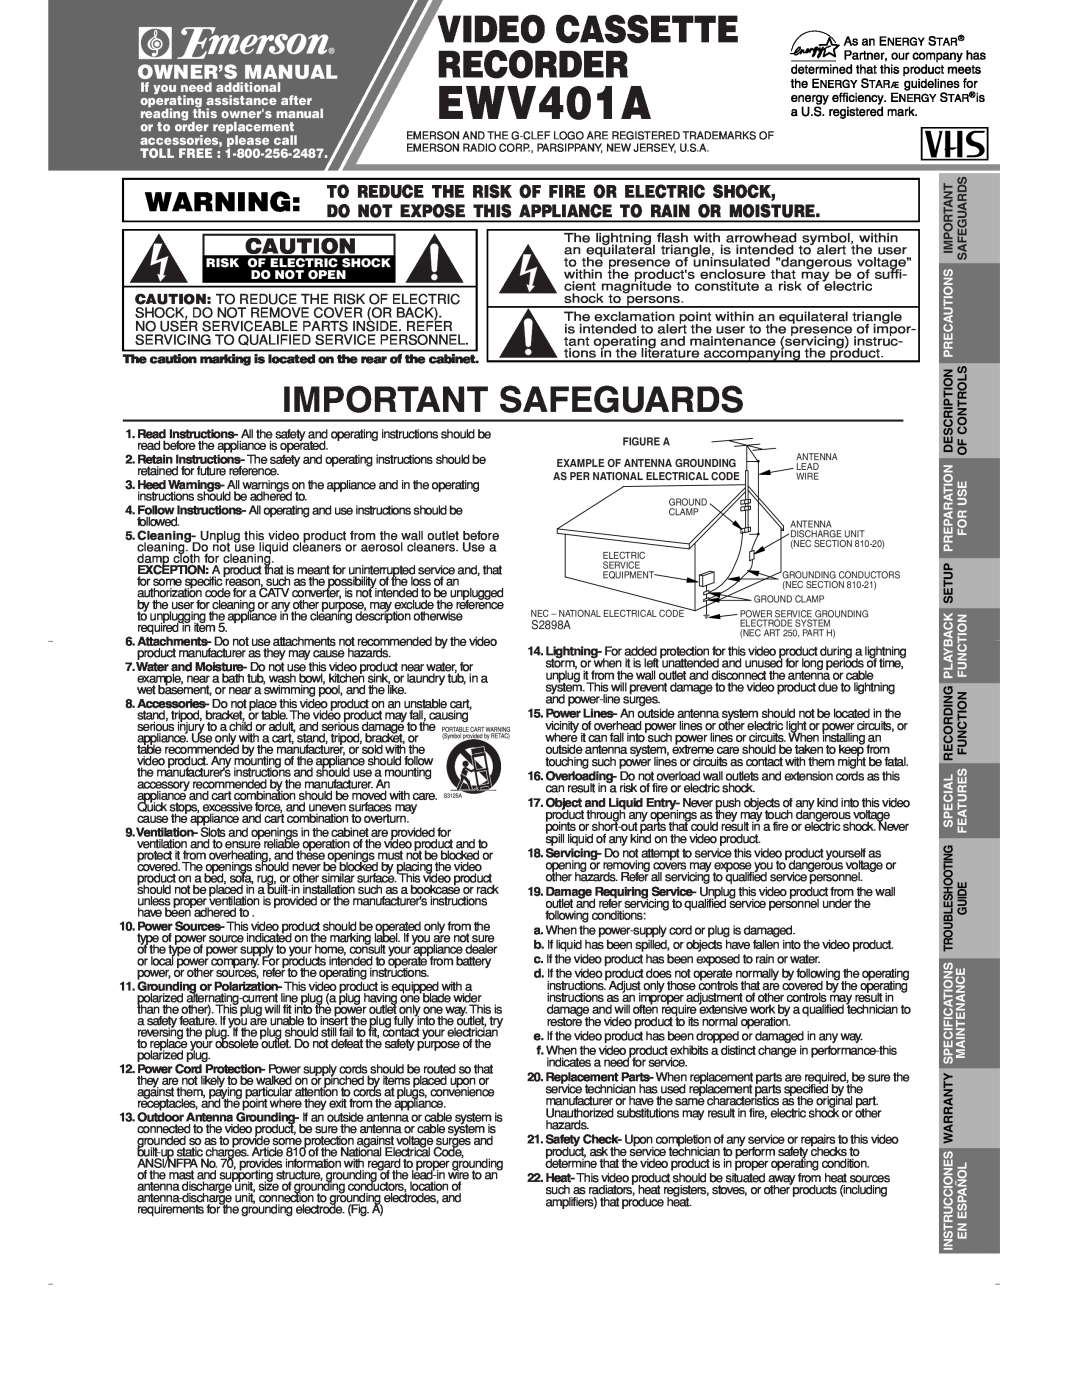 Emerson EWV401A owner manual Important Safeguards, Video Cassette Recorder, Description, Controls 